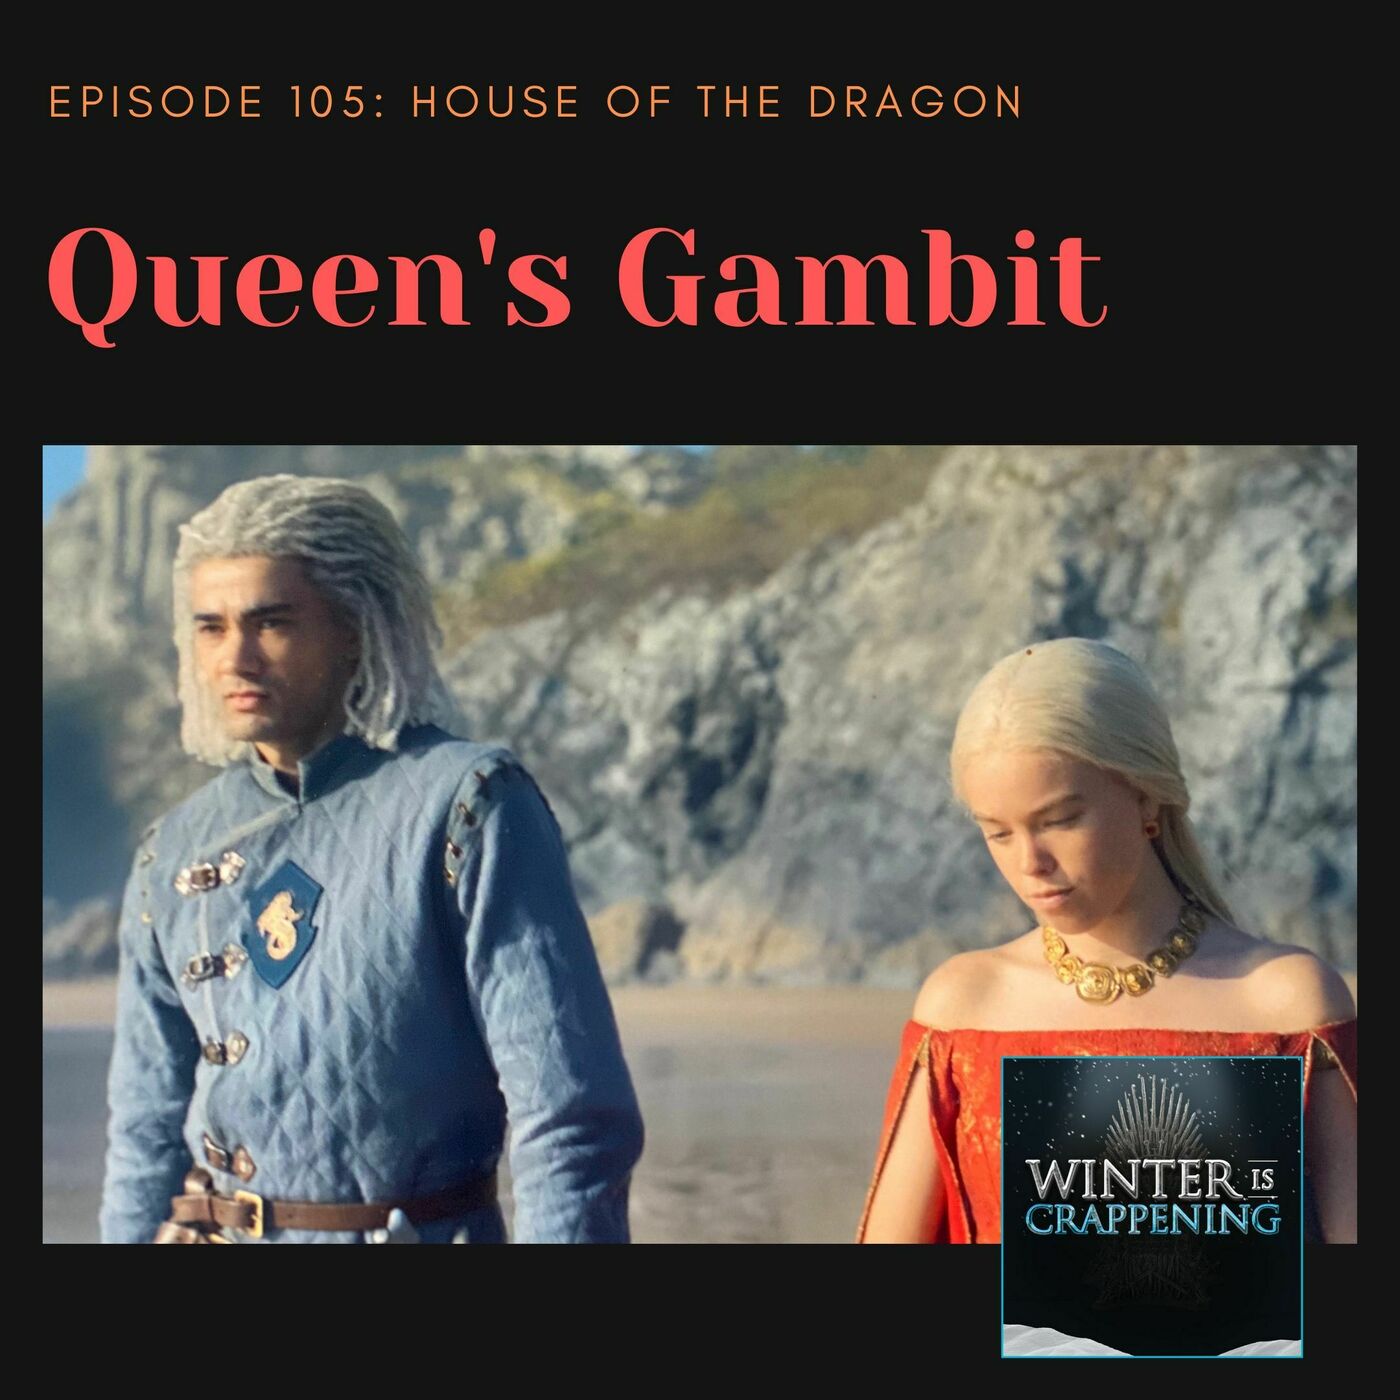 HOTD #105: Queen's Gambit